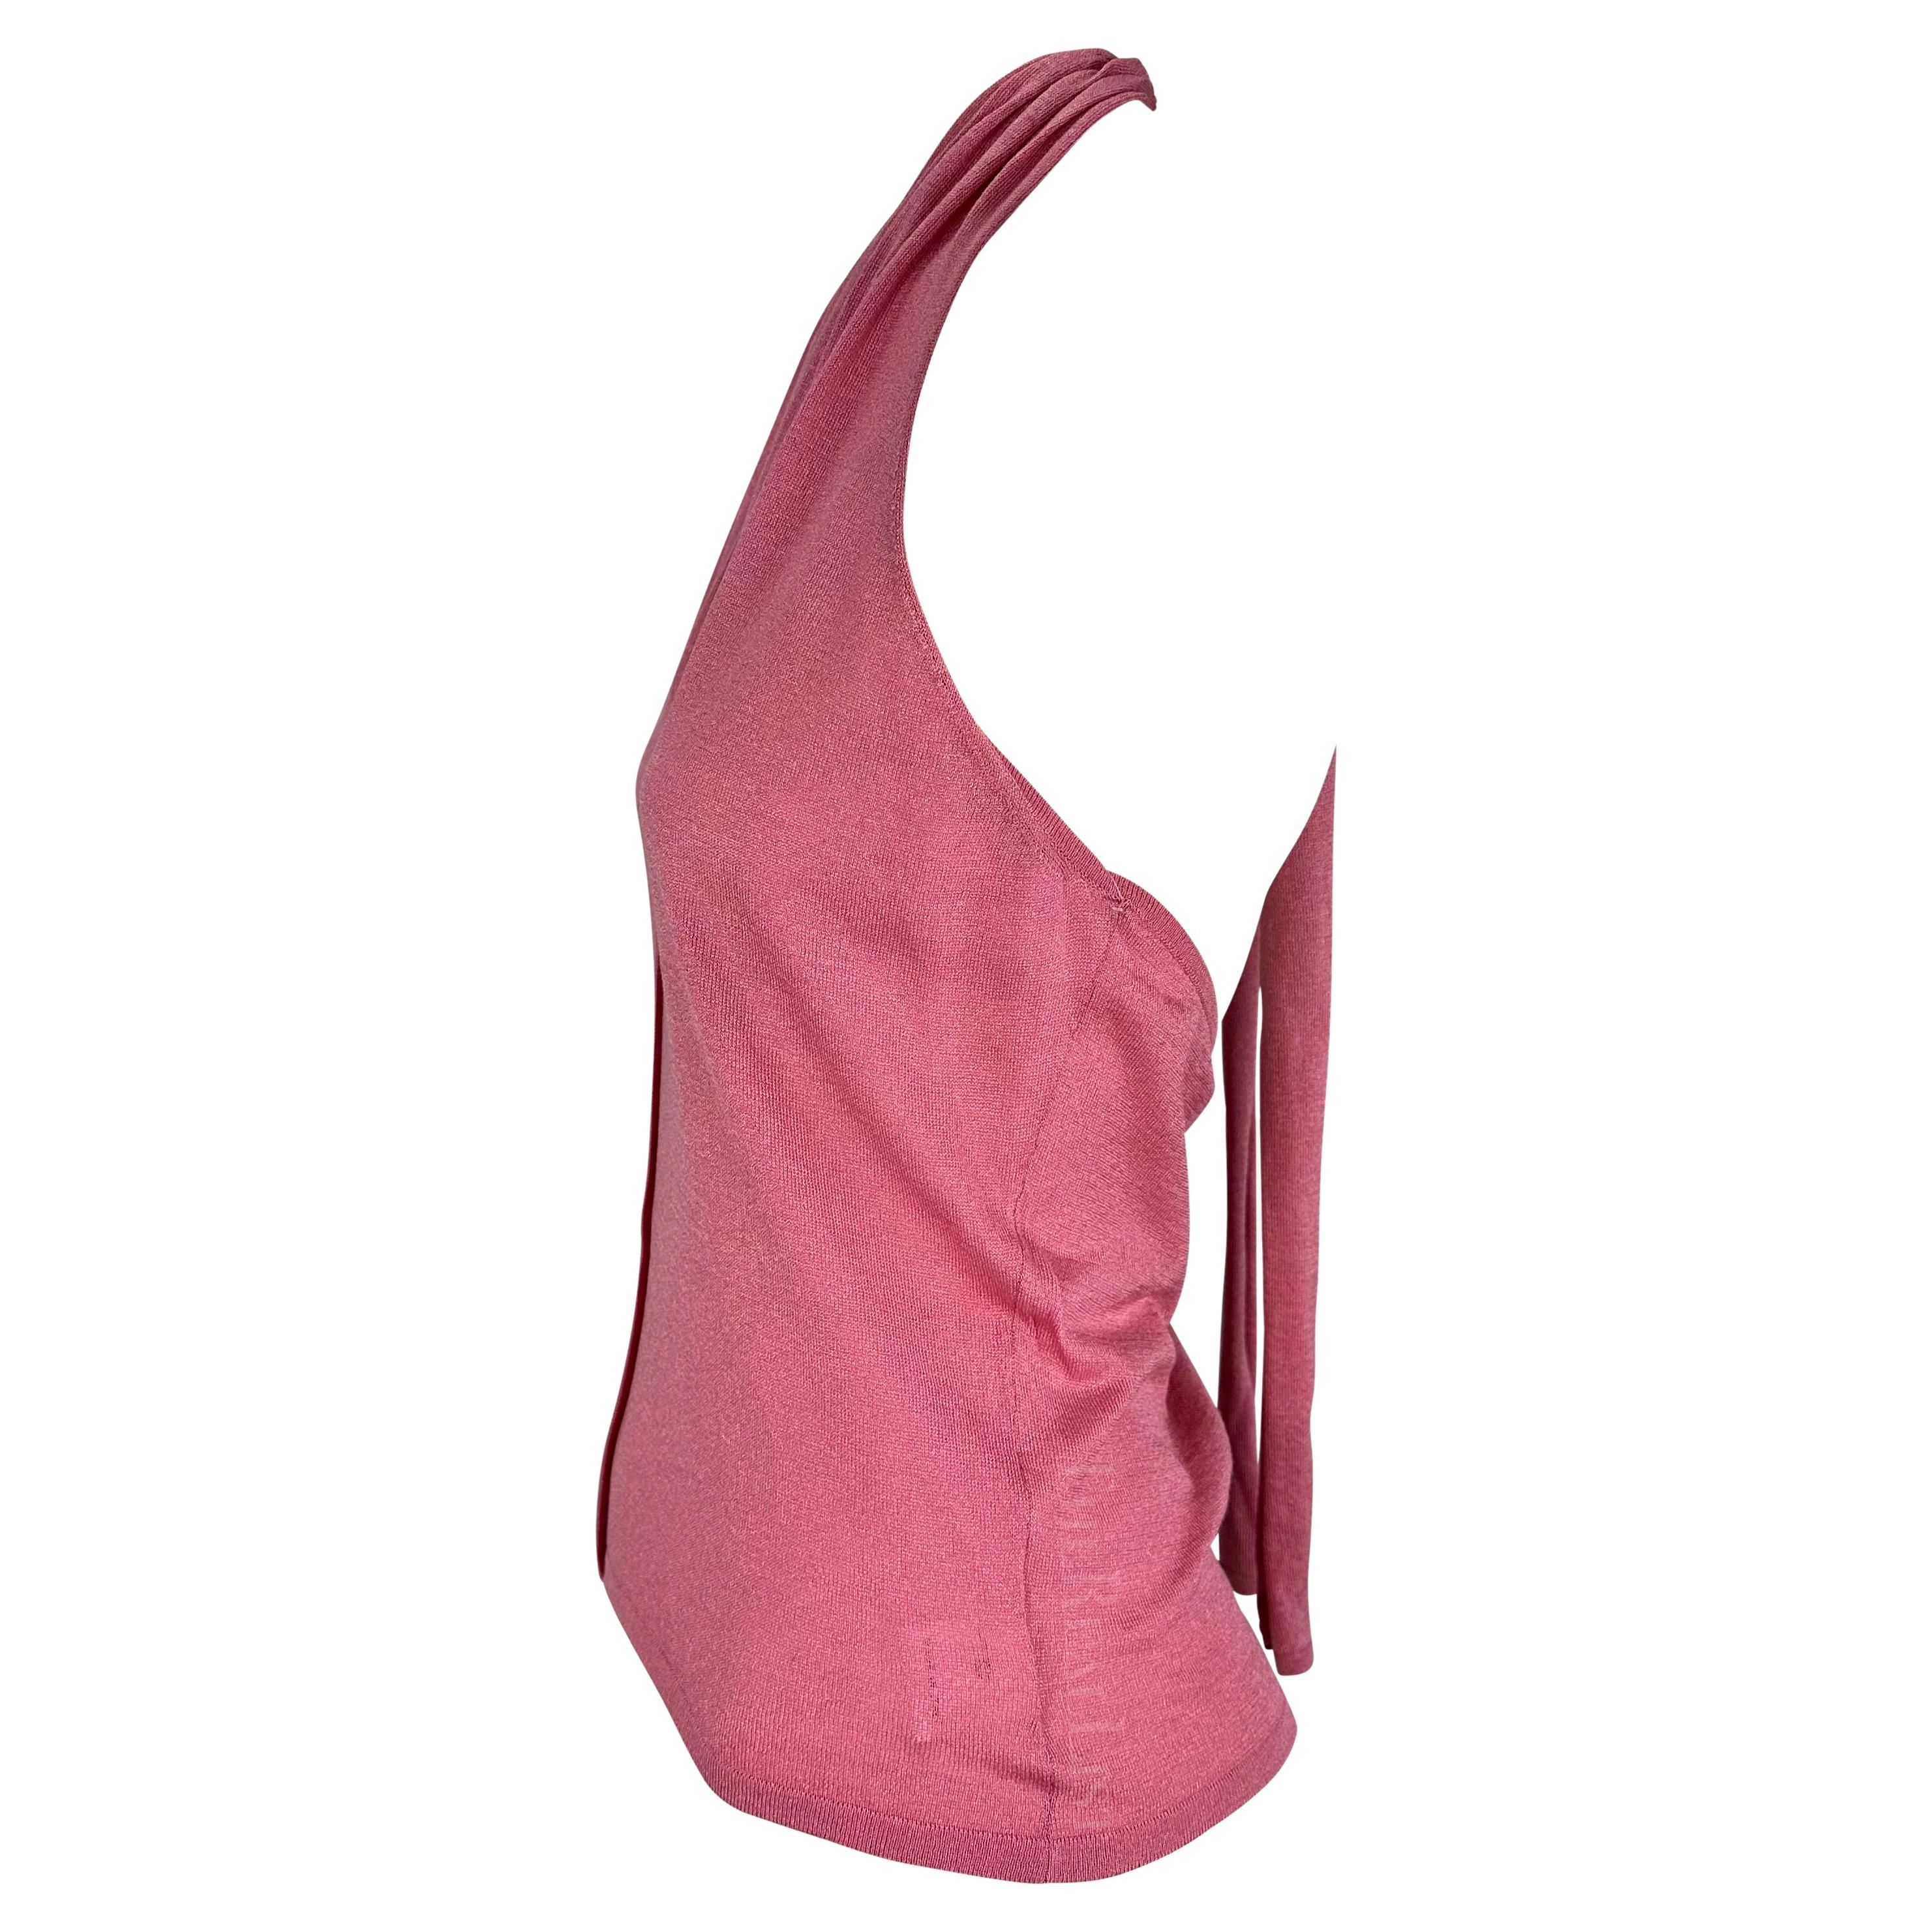 Wir präsentieren ein fabelhaftes, pinkfarbenes Gucci-Strickhalfter-Top, entworfen von Tom Ford. Dieses Oberteil aus den späten 1990er Jahren hat einen V-Ausschnitt, einen ausgestellten Rücken und ein Band im Nacken. Von vor über 20 Jahren, ist